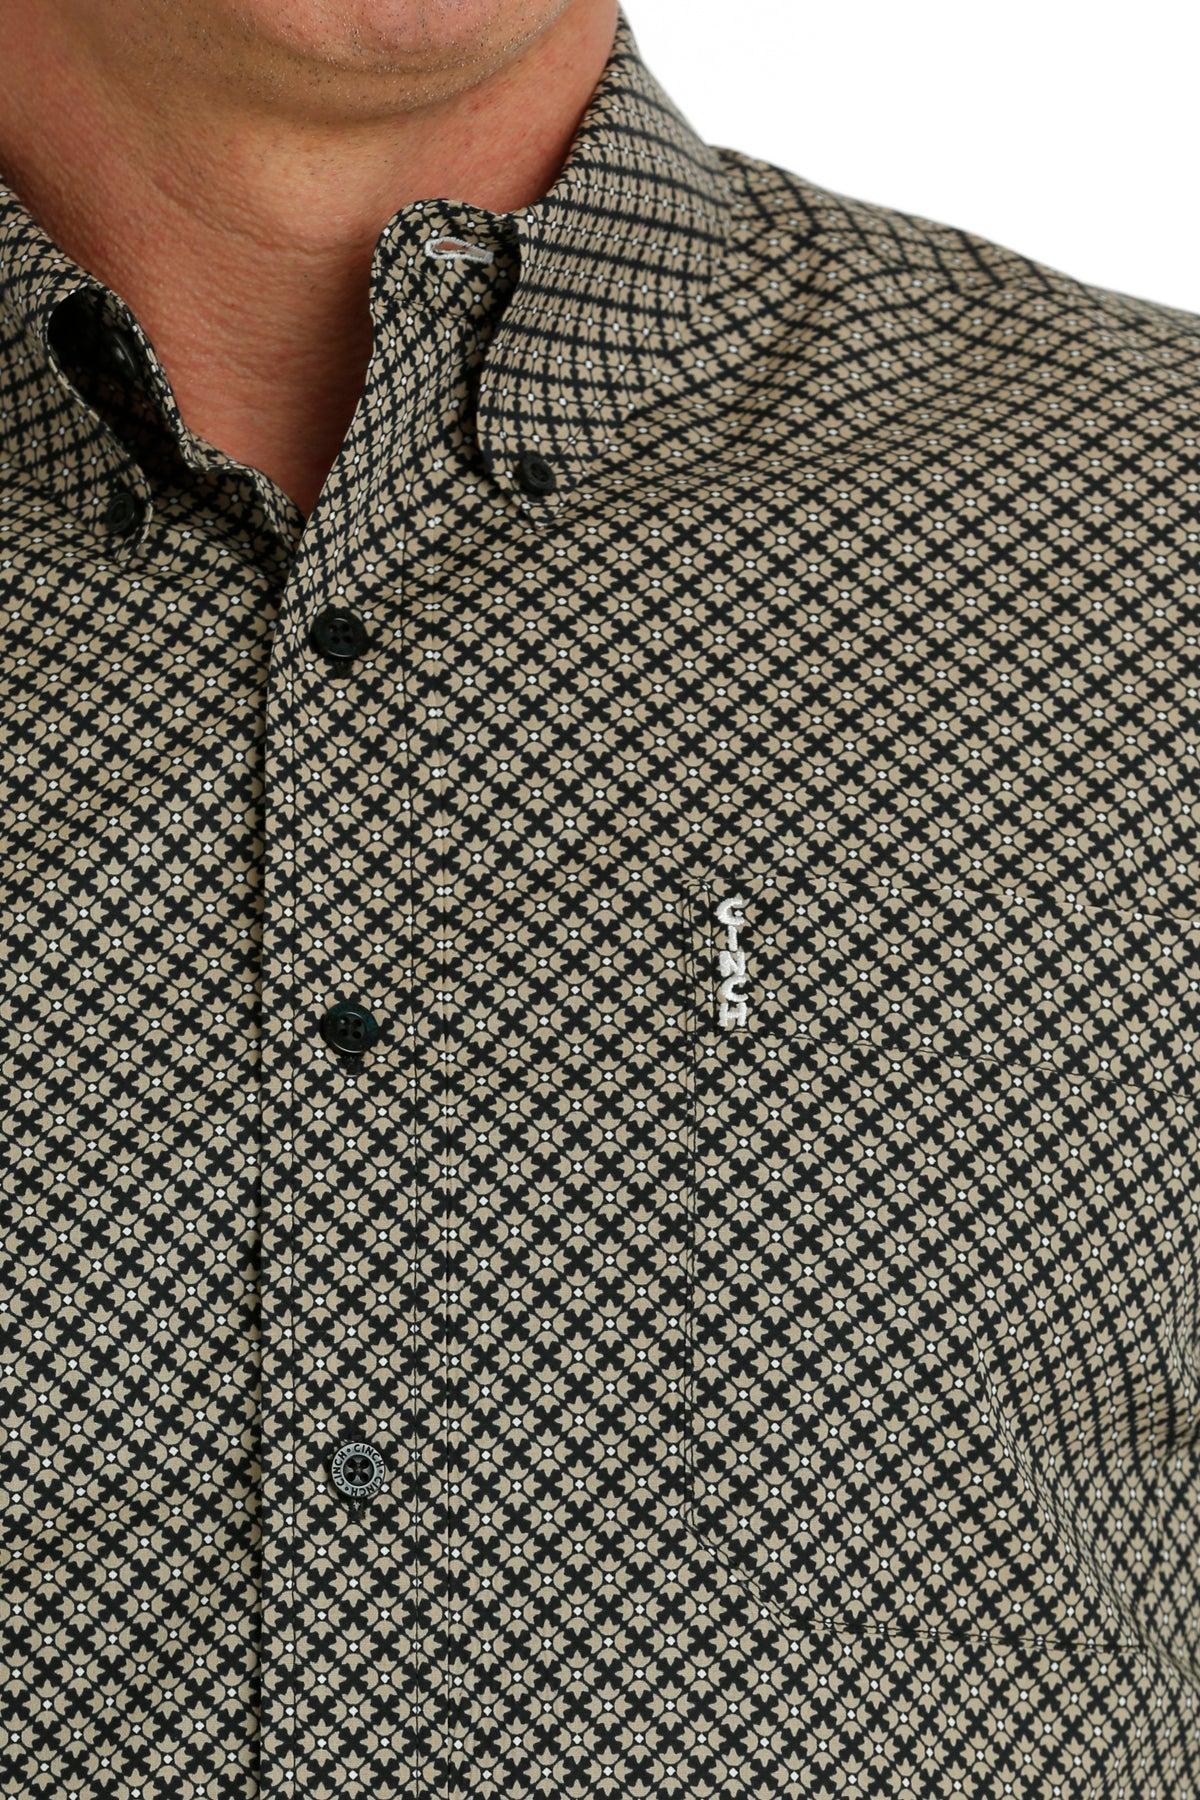 Cinch Men's Modern Fit Black & Khaki Geometric Western Button Down Shirt